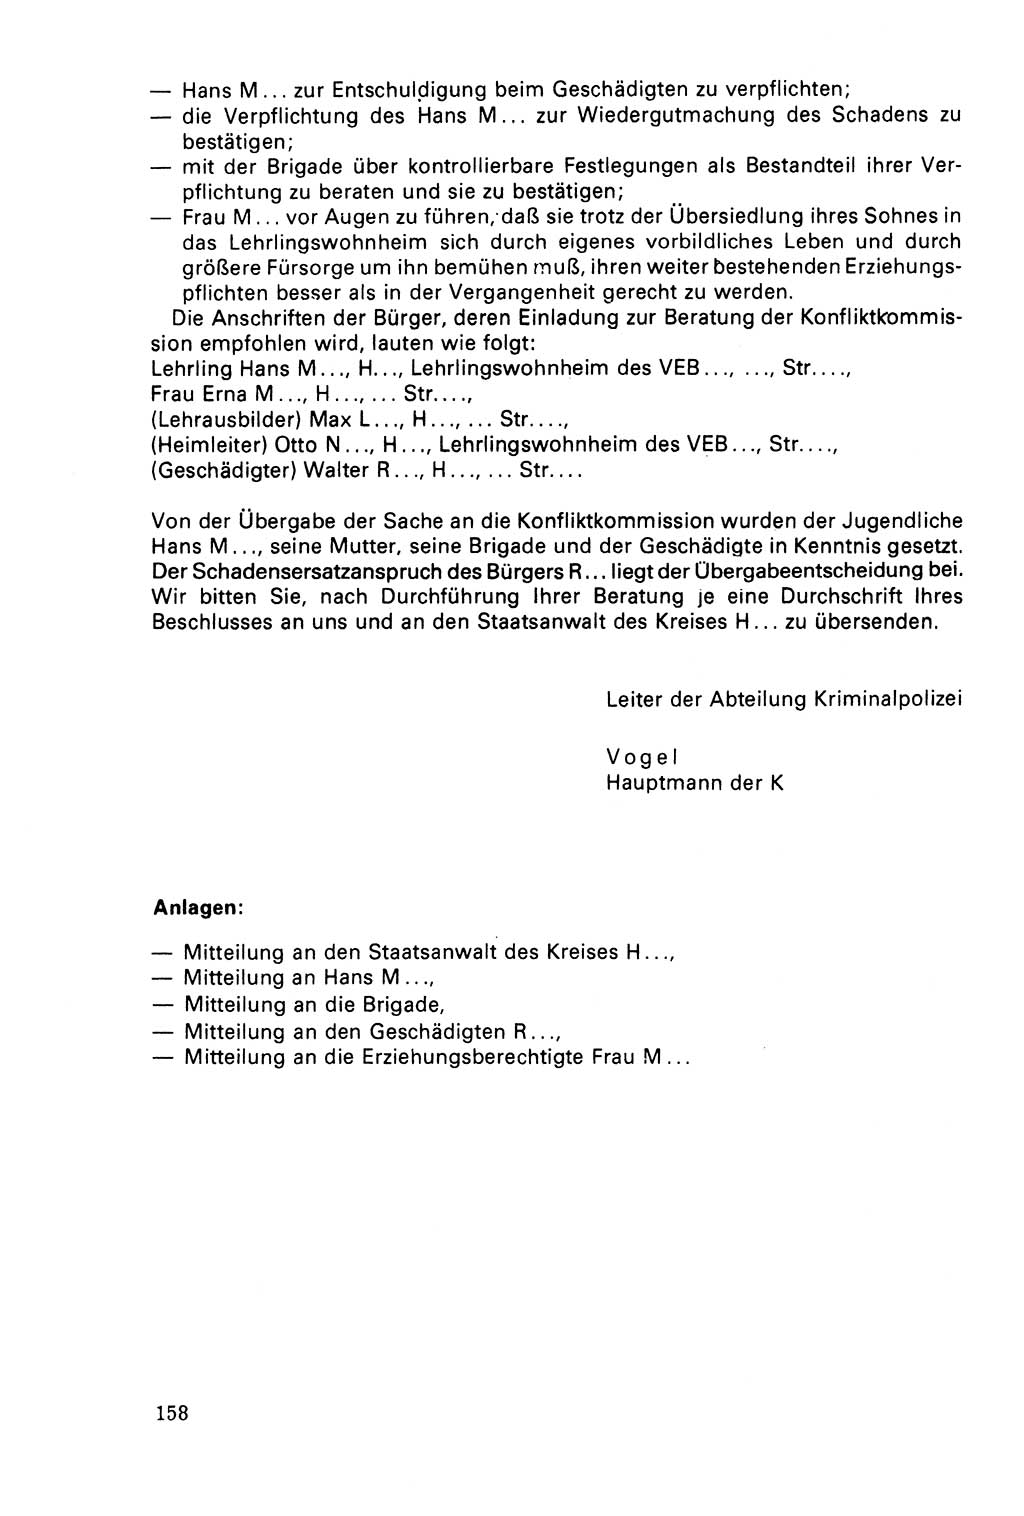 Der Abschluß des Ermittlungsverfahrens [Deutsche Demokratische Republik (DDR)] 1978, Seite 158 (Abschl. EV DDR 1978, S. 158)